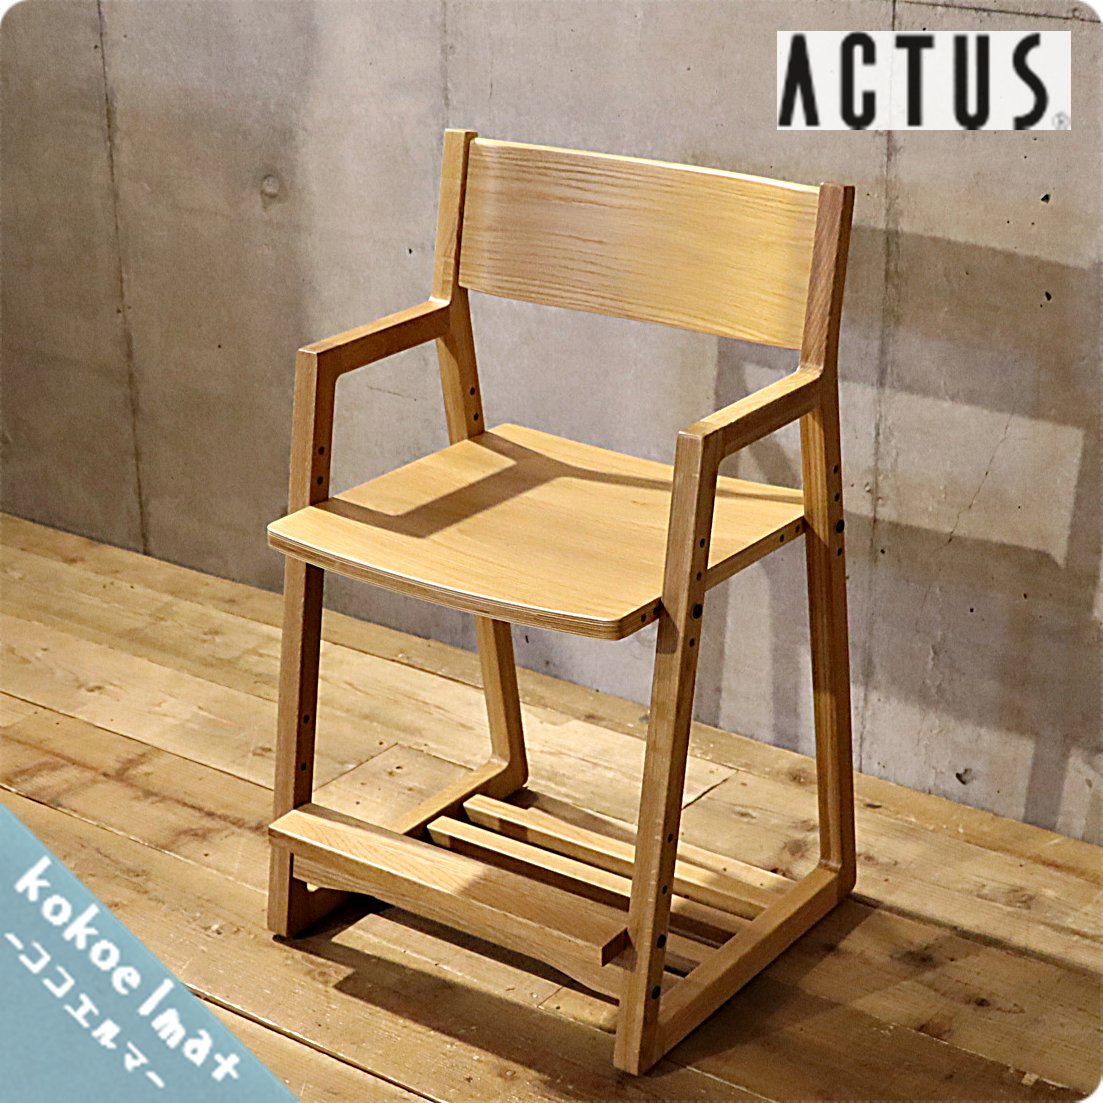 ACTUS Fチェア 子供用学習椅子-